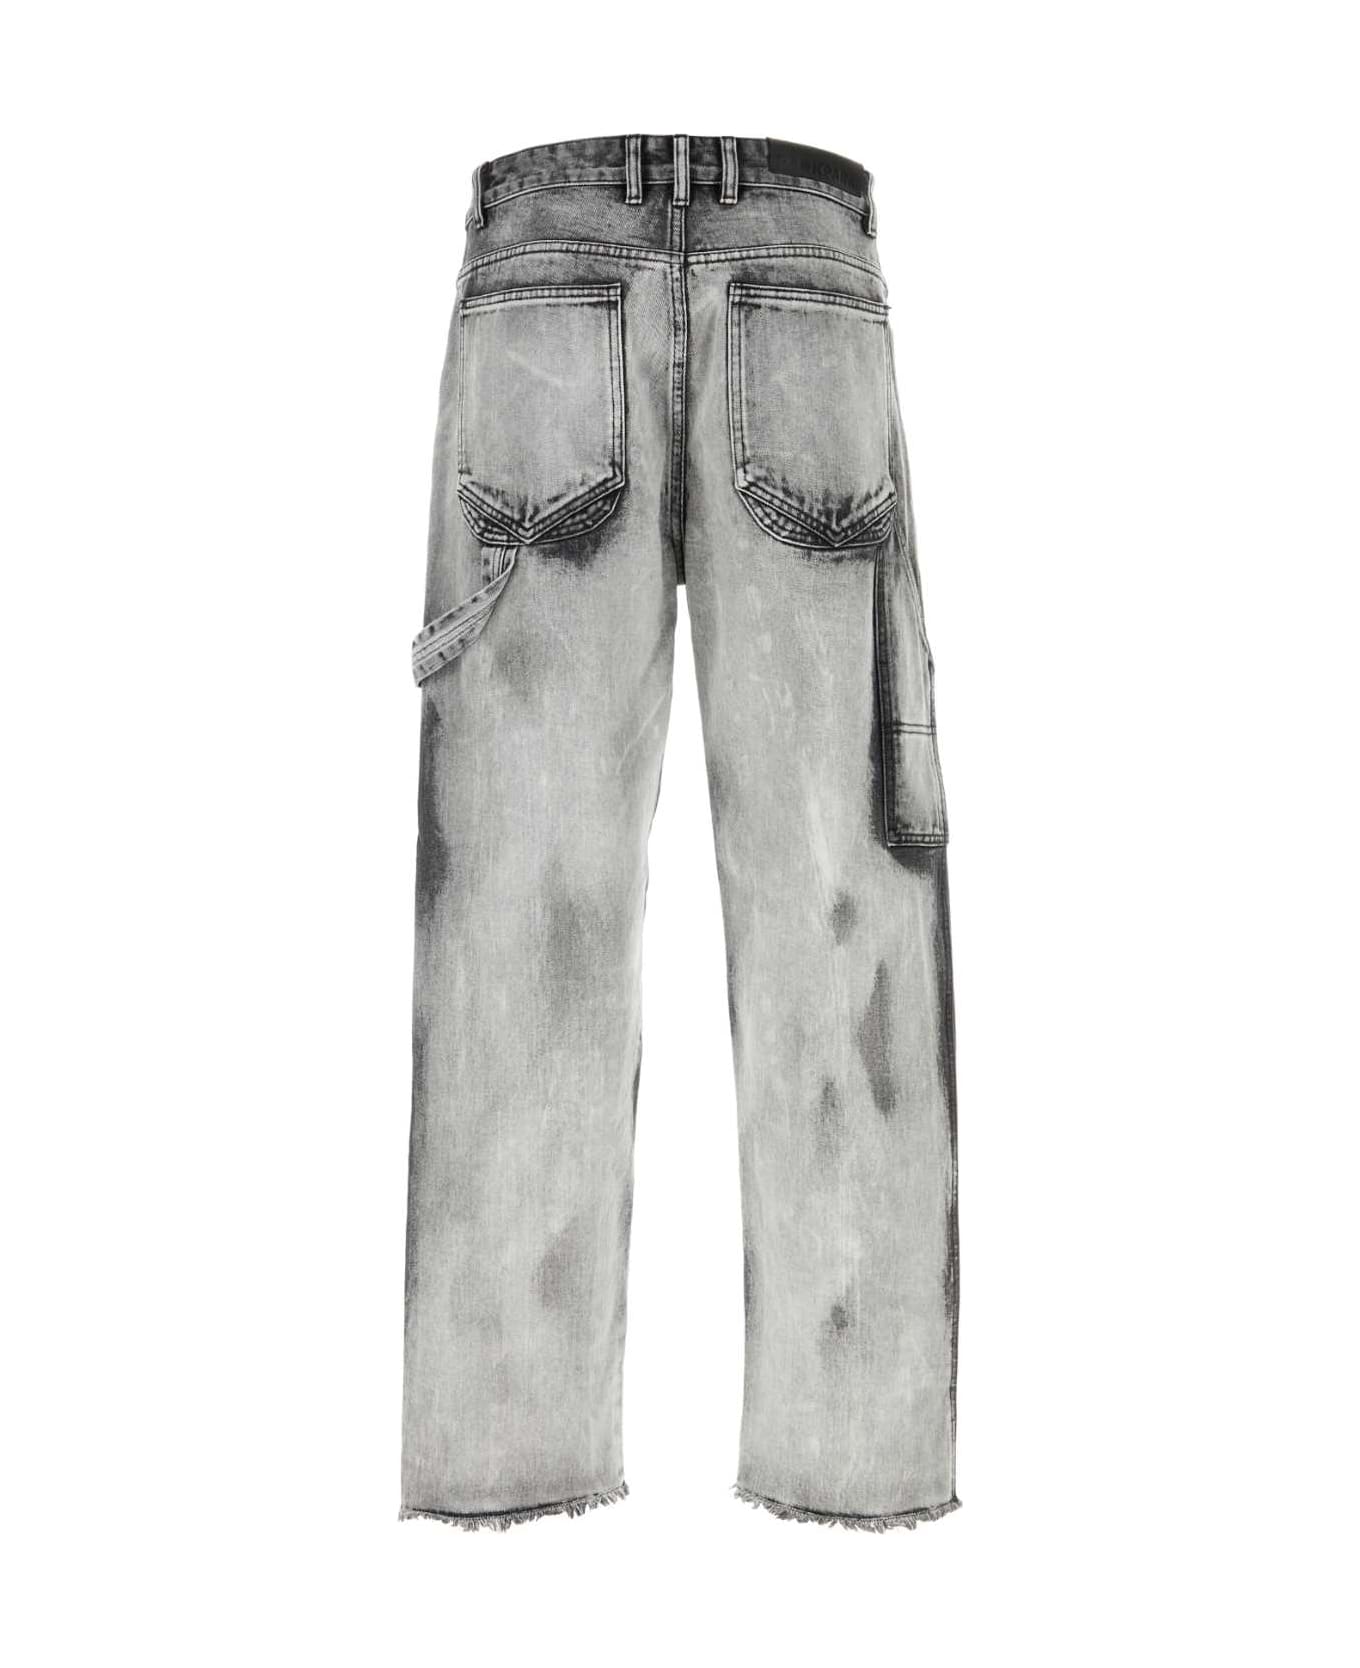 DARKPARK Grey Denim John Jeans - OFFWHITEBLACK